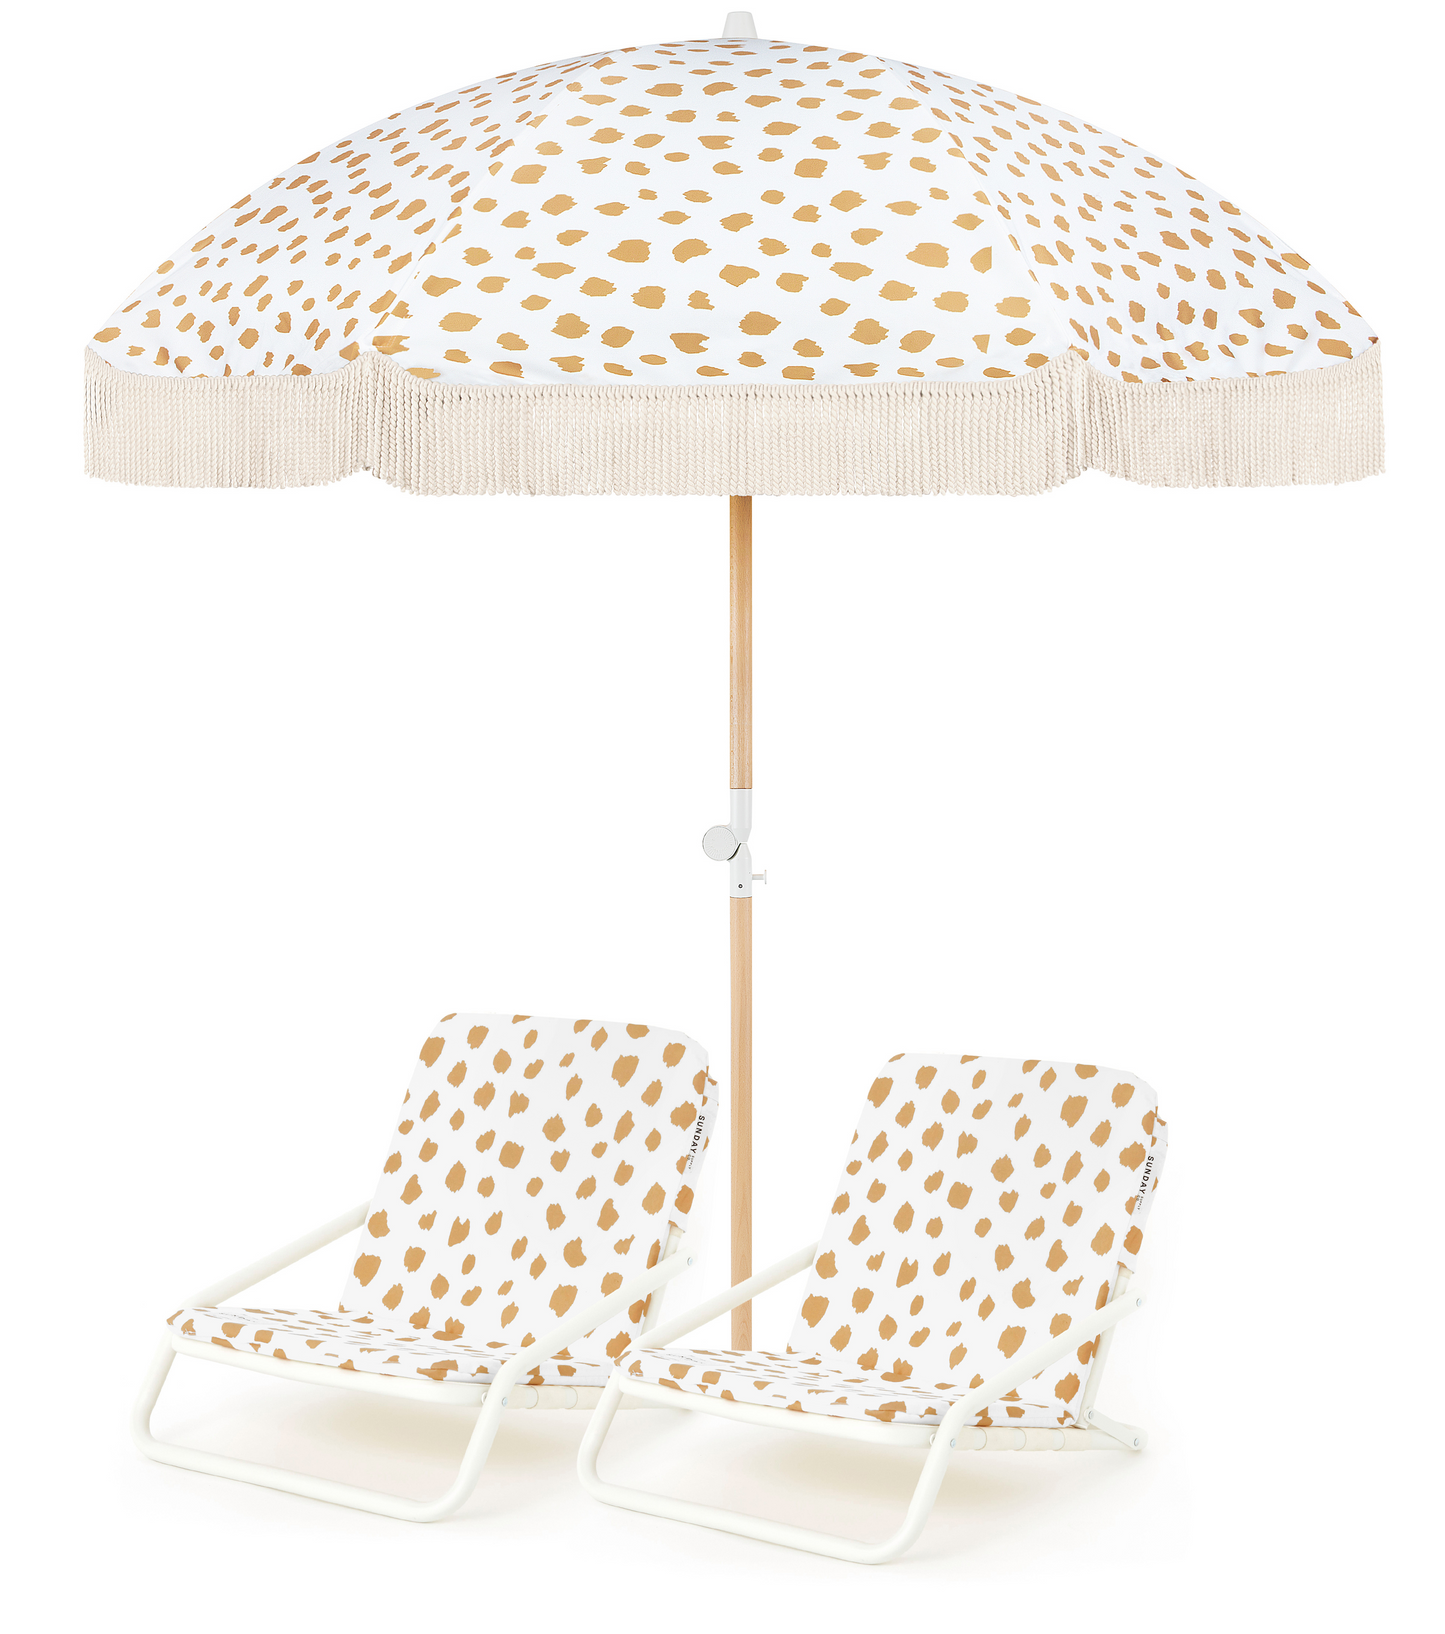 Golden Sands Beach Umbrella & Beach Chair Set